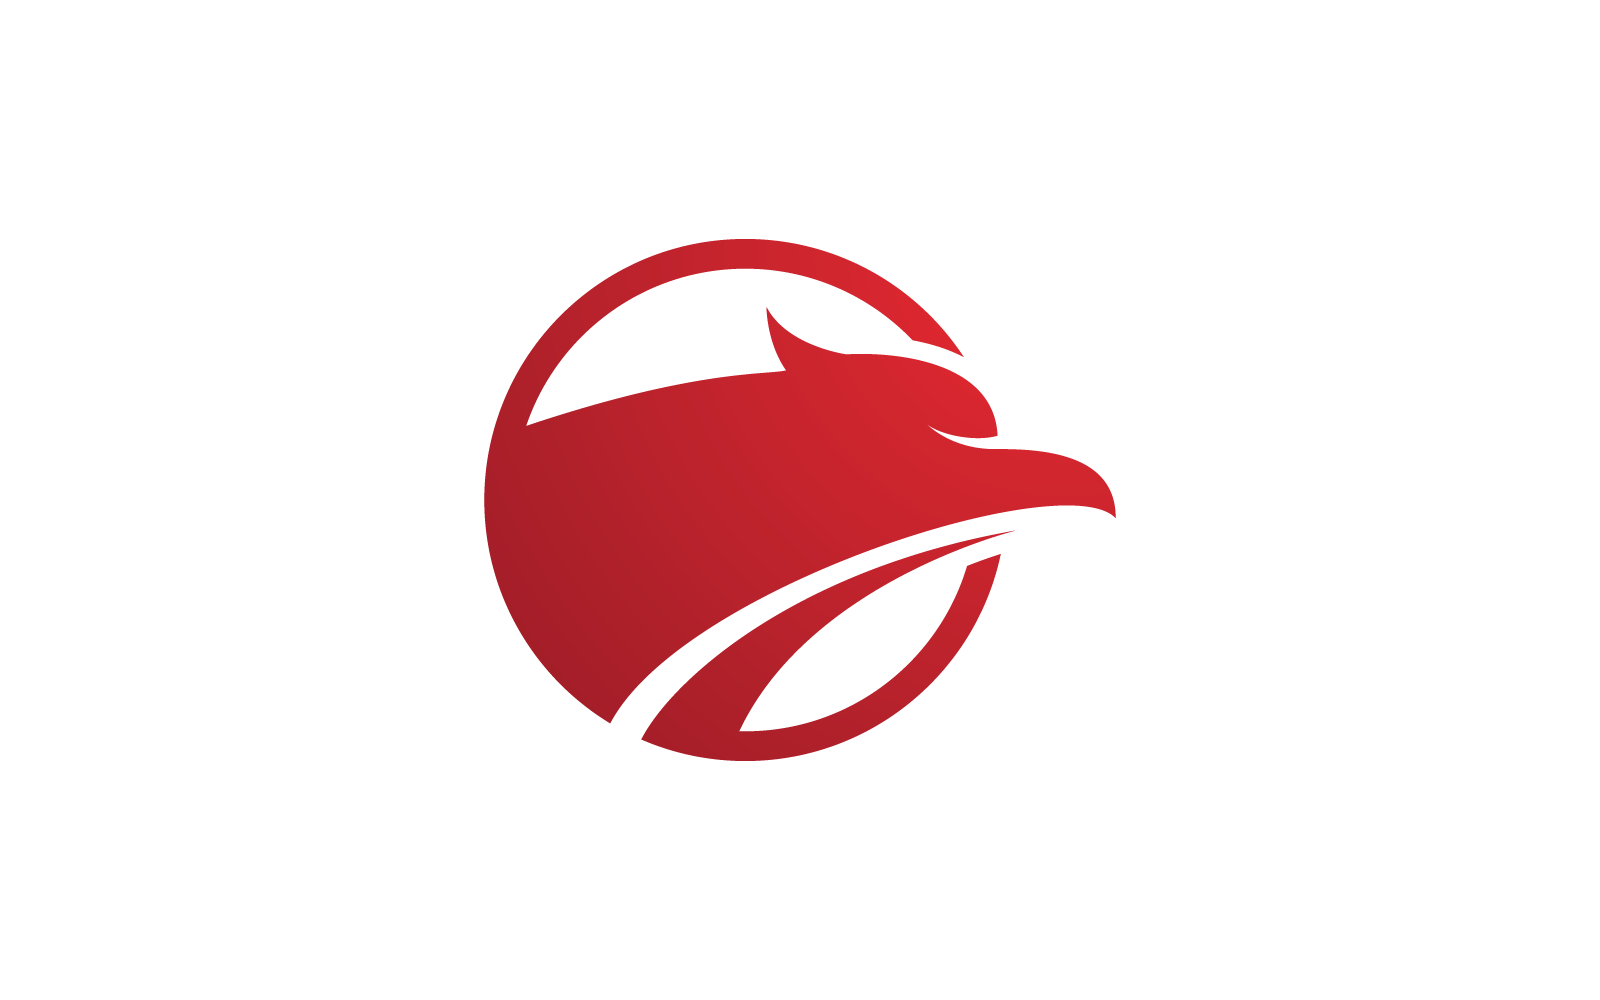 Falcon eagle bird illustration logo vector design